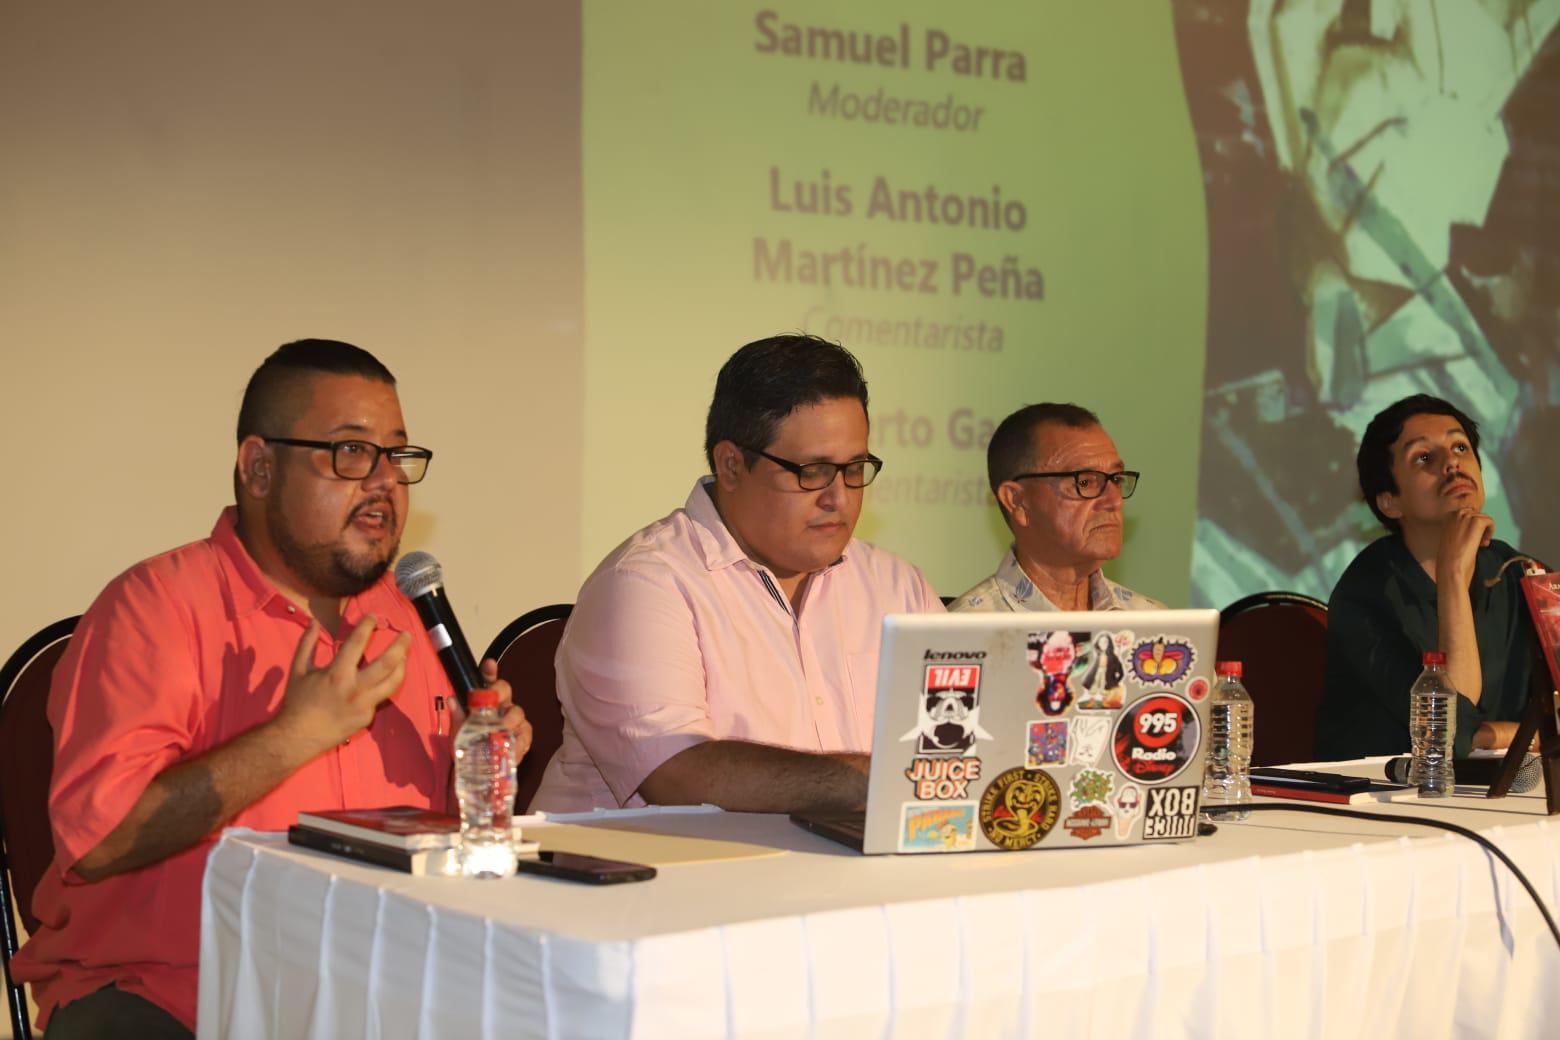 $!Los comentarios sobre el libro fueron por el escritor mazatleco Samuel Parra, Luis Antonio Martínez y Adalberto García López.